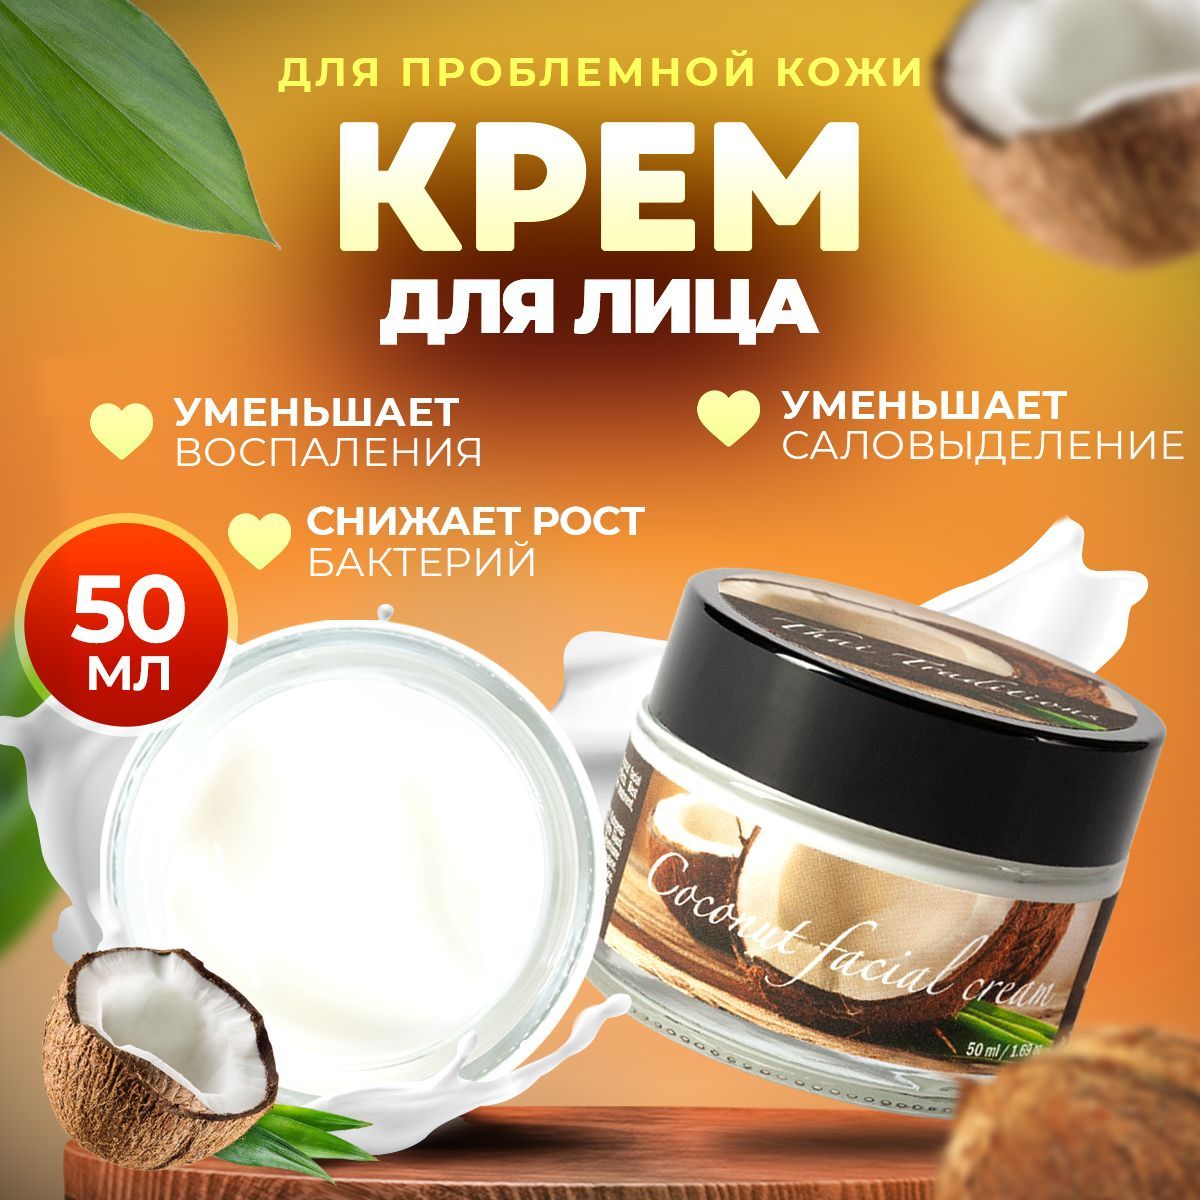 Натуральные кремы для лица и тела – купить в интернет-магазине с доставкой по России